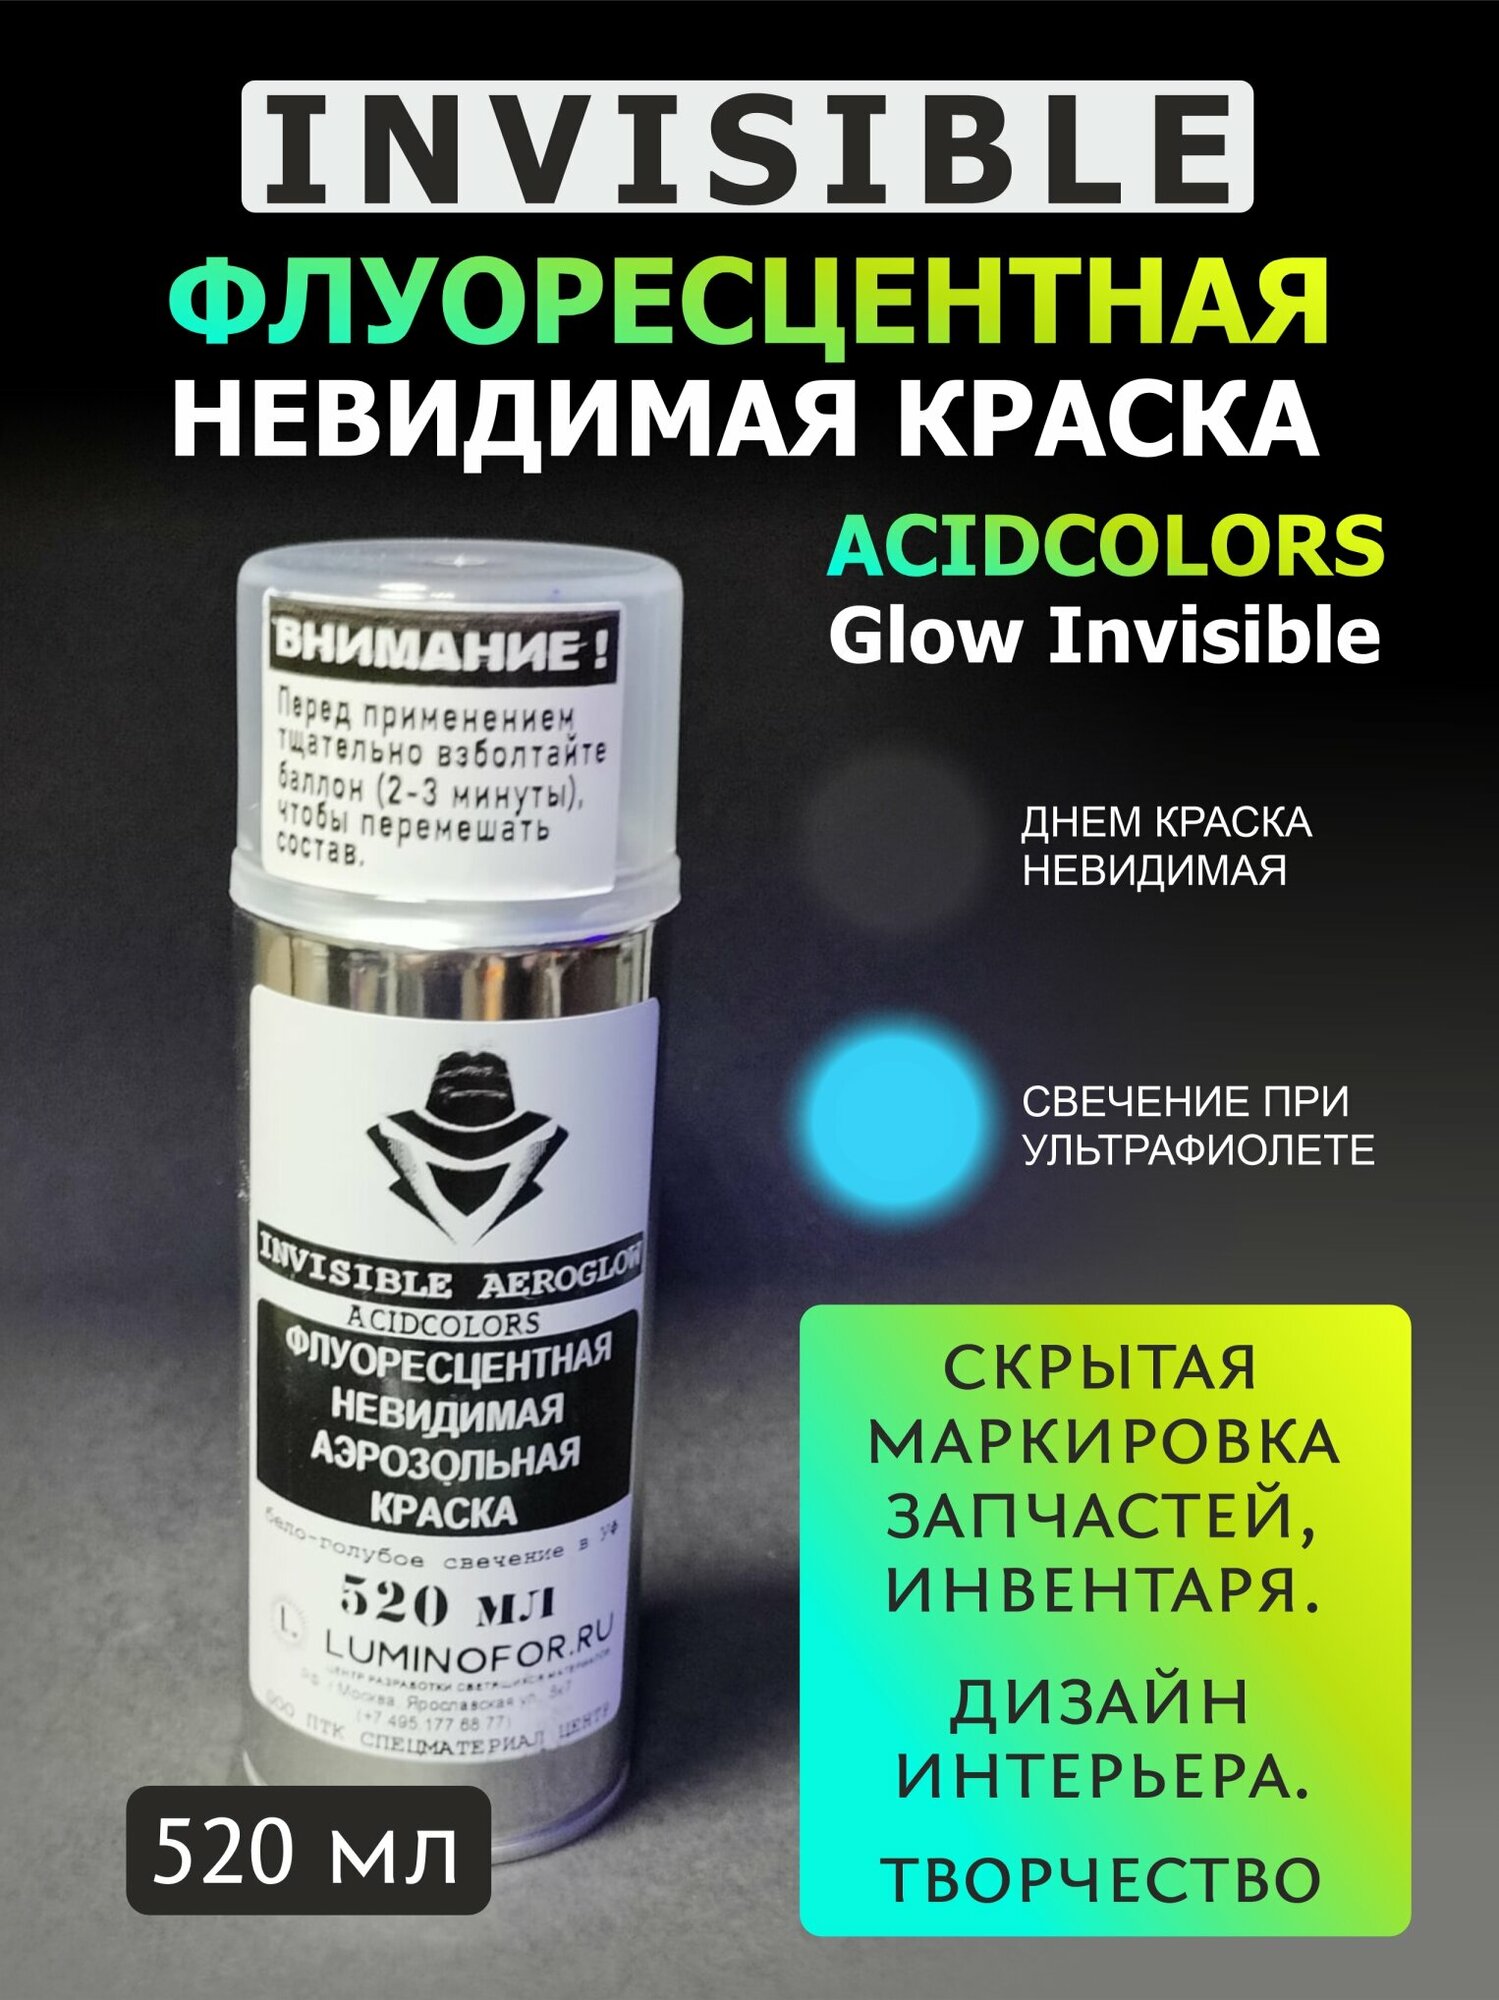 Краска невидимая аэрозольная AcidColors Glow INVISIBLE флуоресцентная (светится при ультрафиолете)